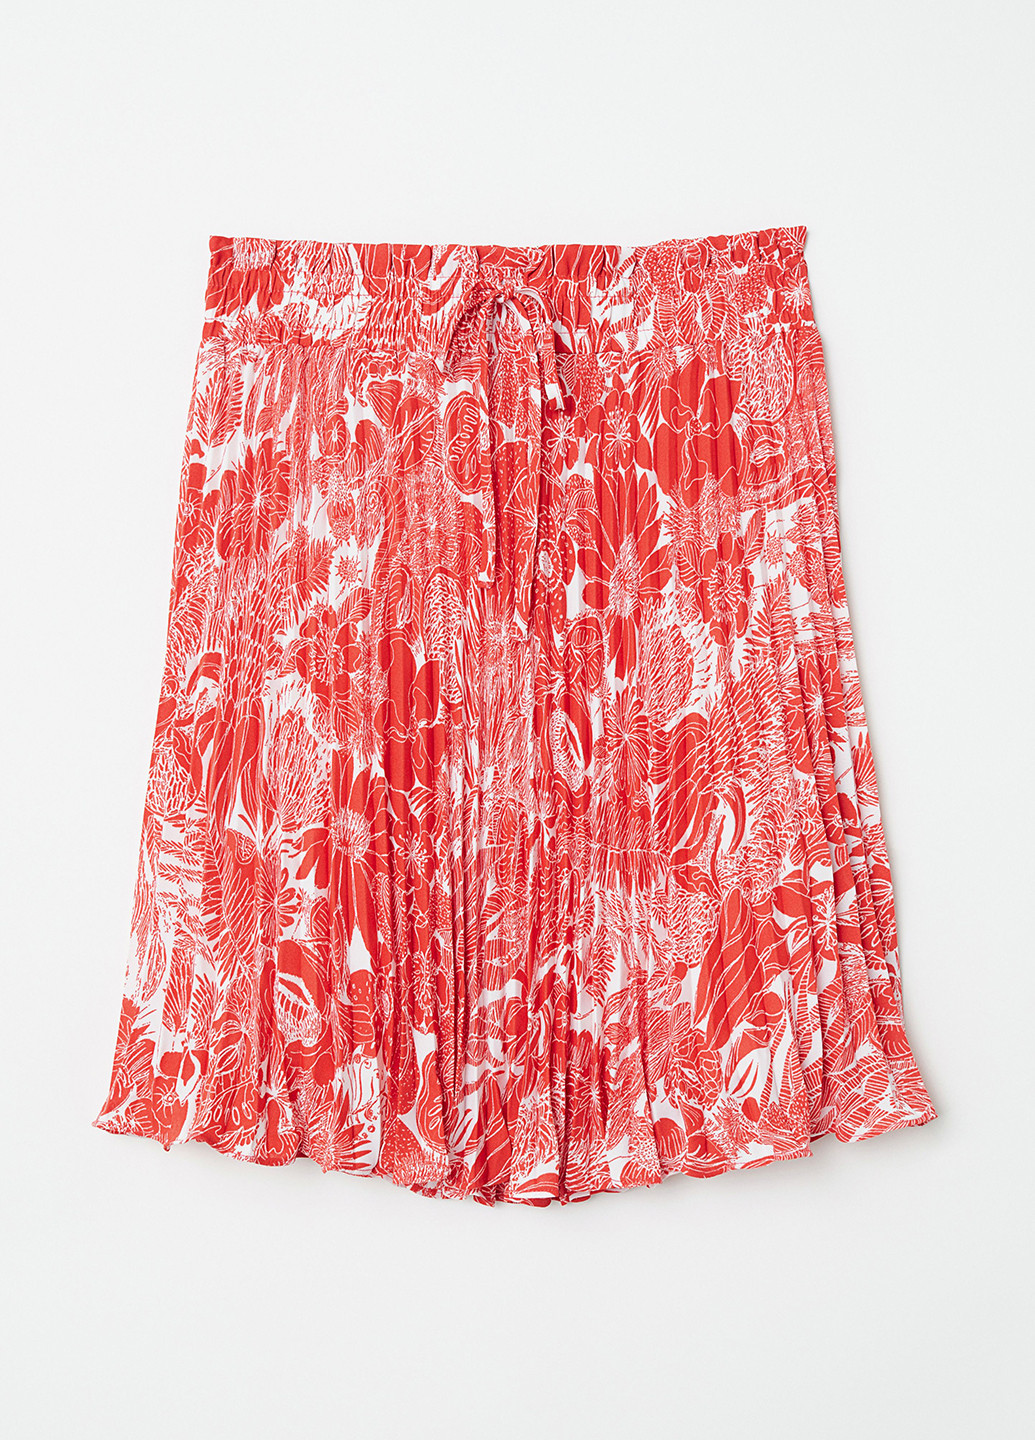 Красная кэжуал цветочной расцветки юбка H&M плиссе, клешированная-солнце